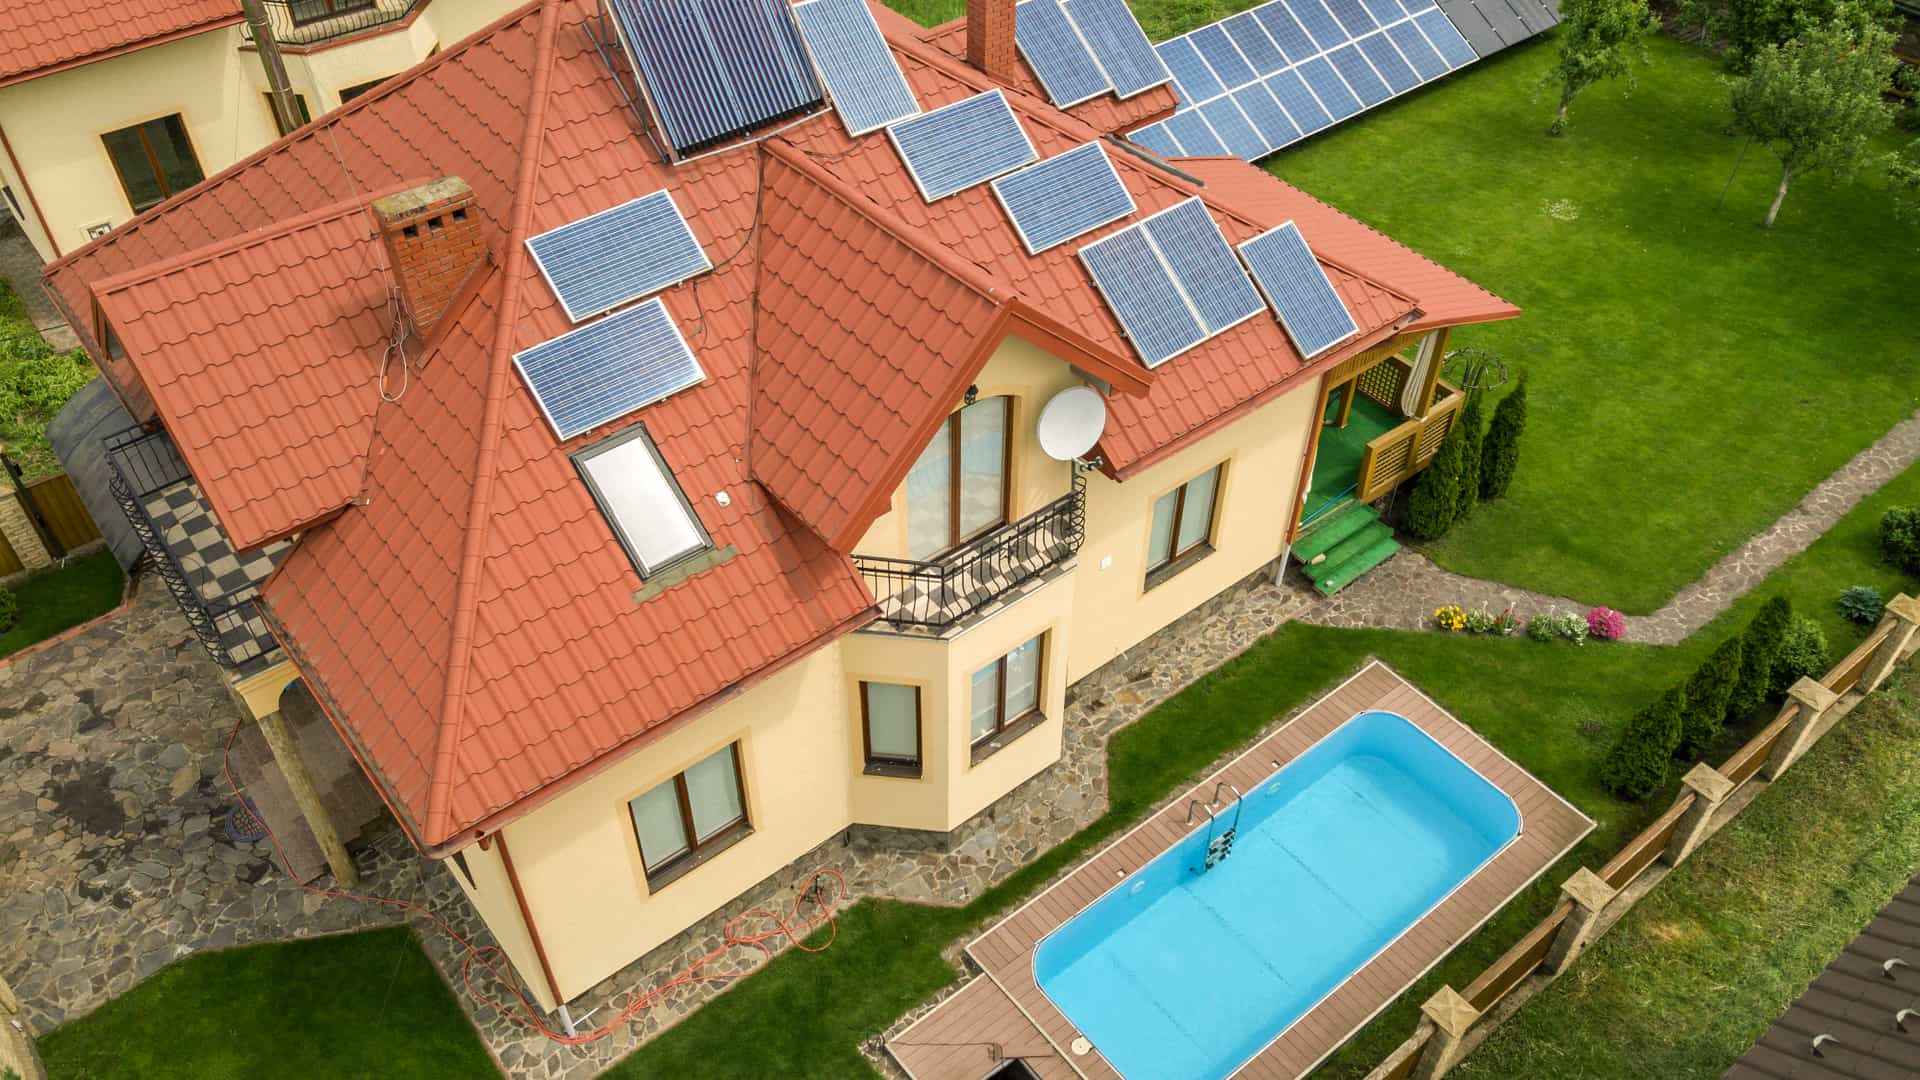 Casa con piscina exterior e instalación de placas solares de distintos tipos que entre otras cosas pueden usar para calentar la piscina cuando lo necesitan